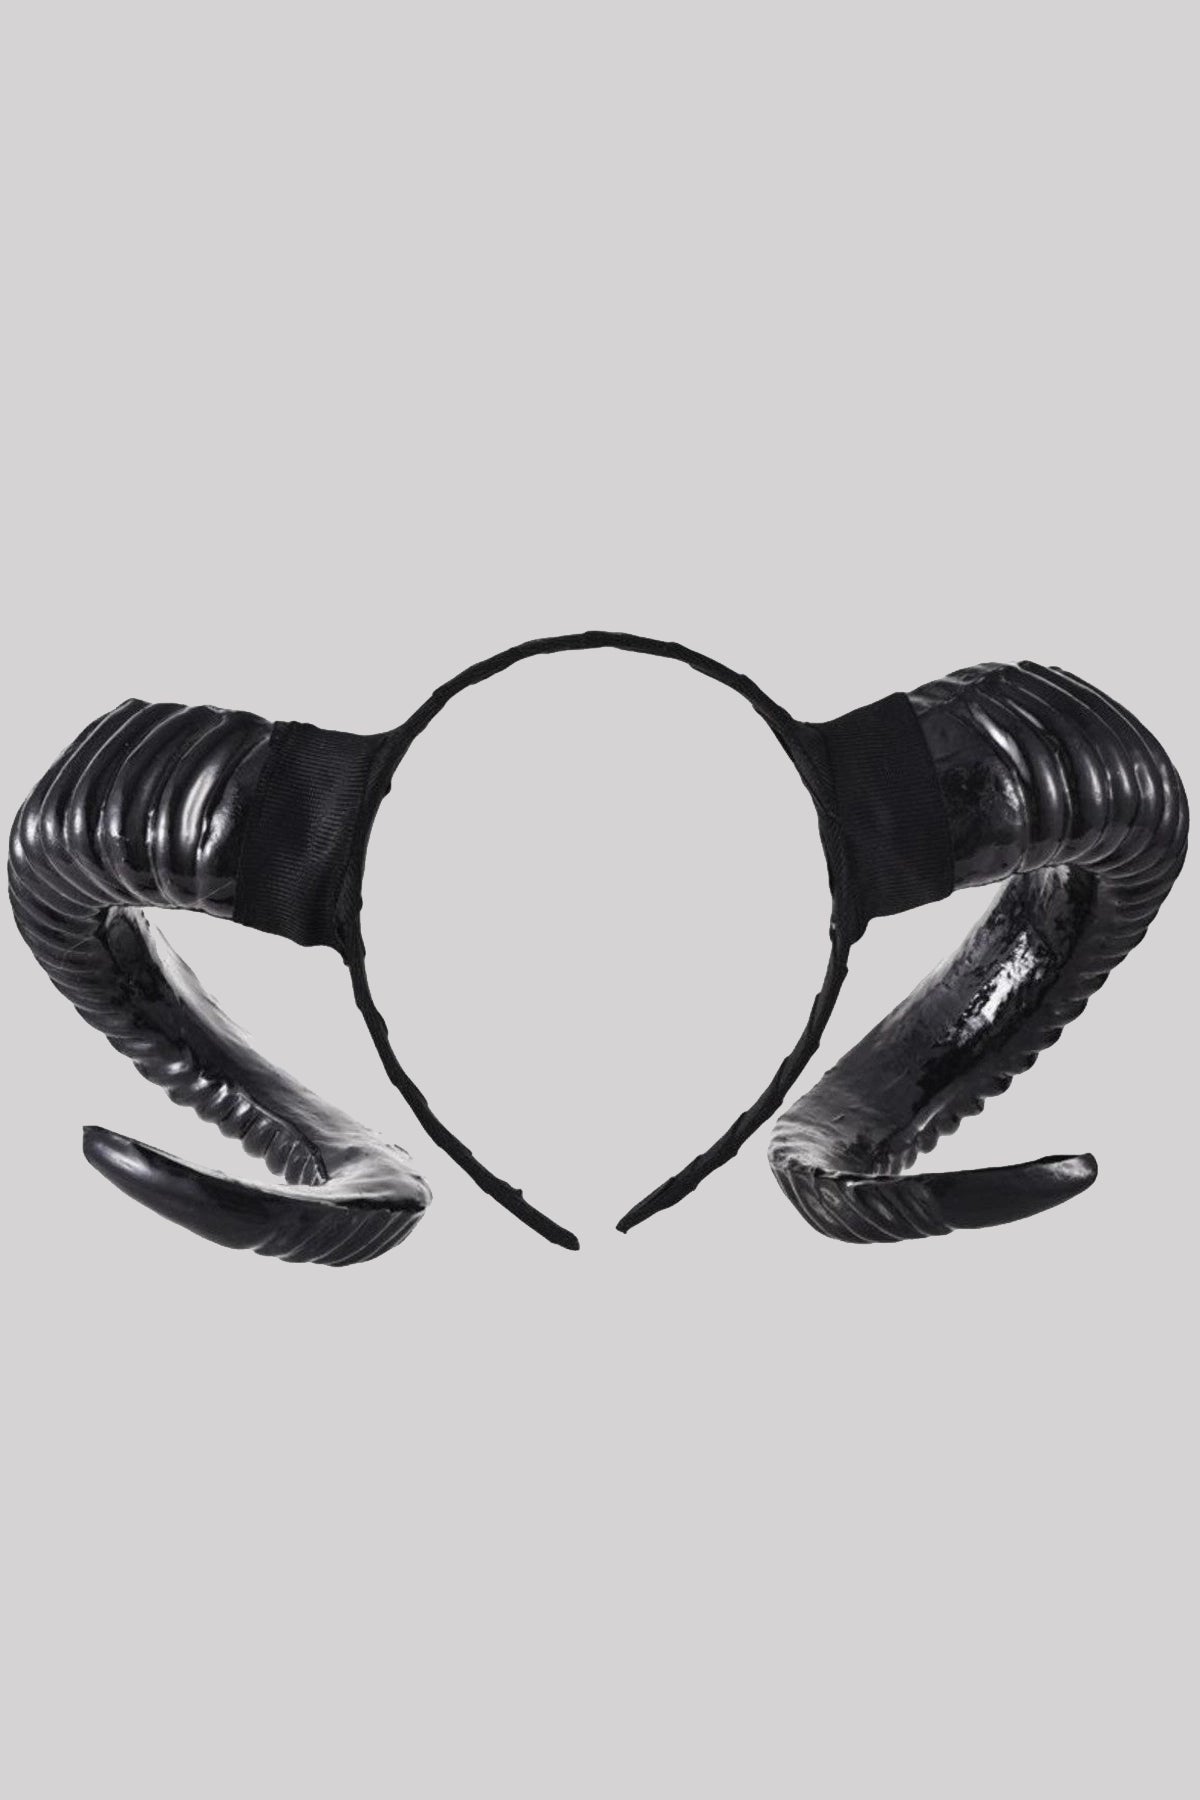 Ro Rox Gothic Satanic Horns Headband